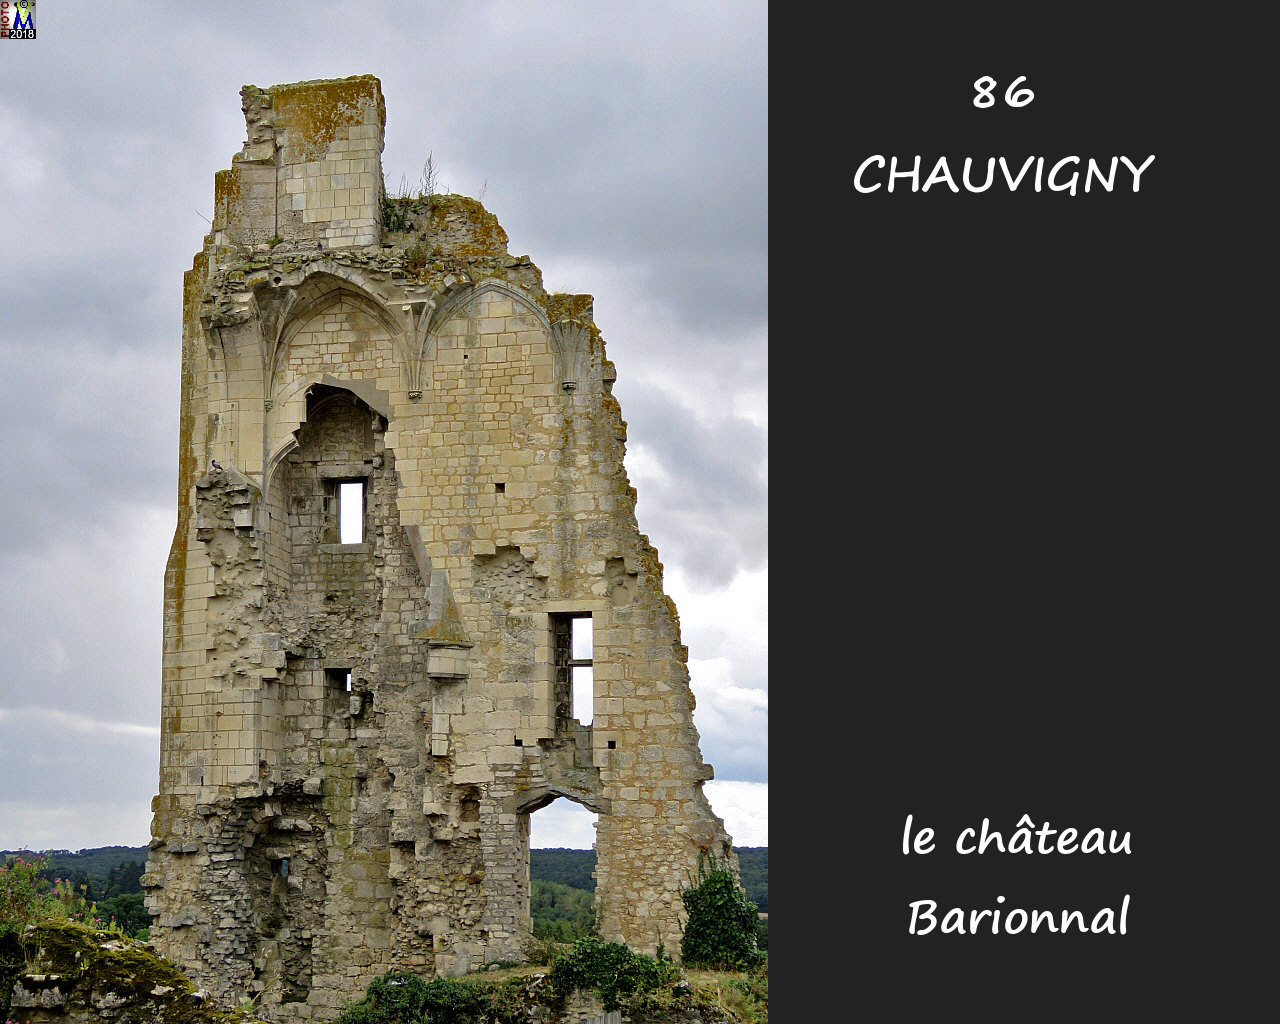 86CHAUVIGNY_chateau-Barionnal_1018.jpg